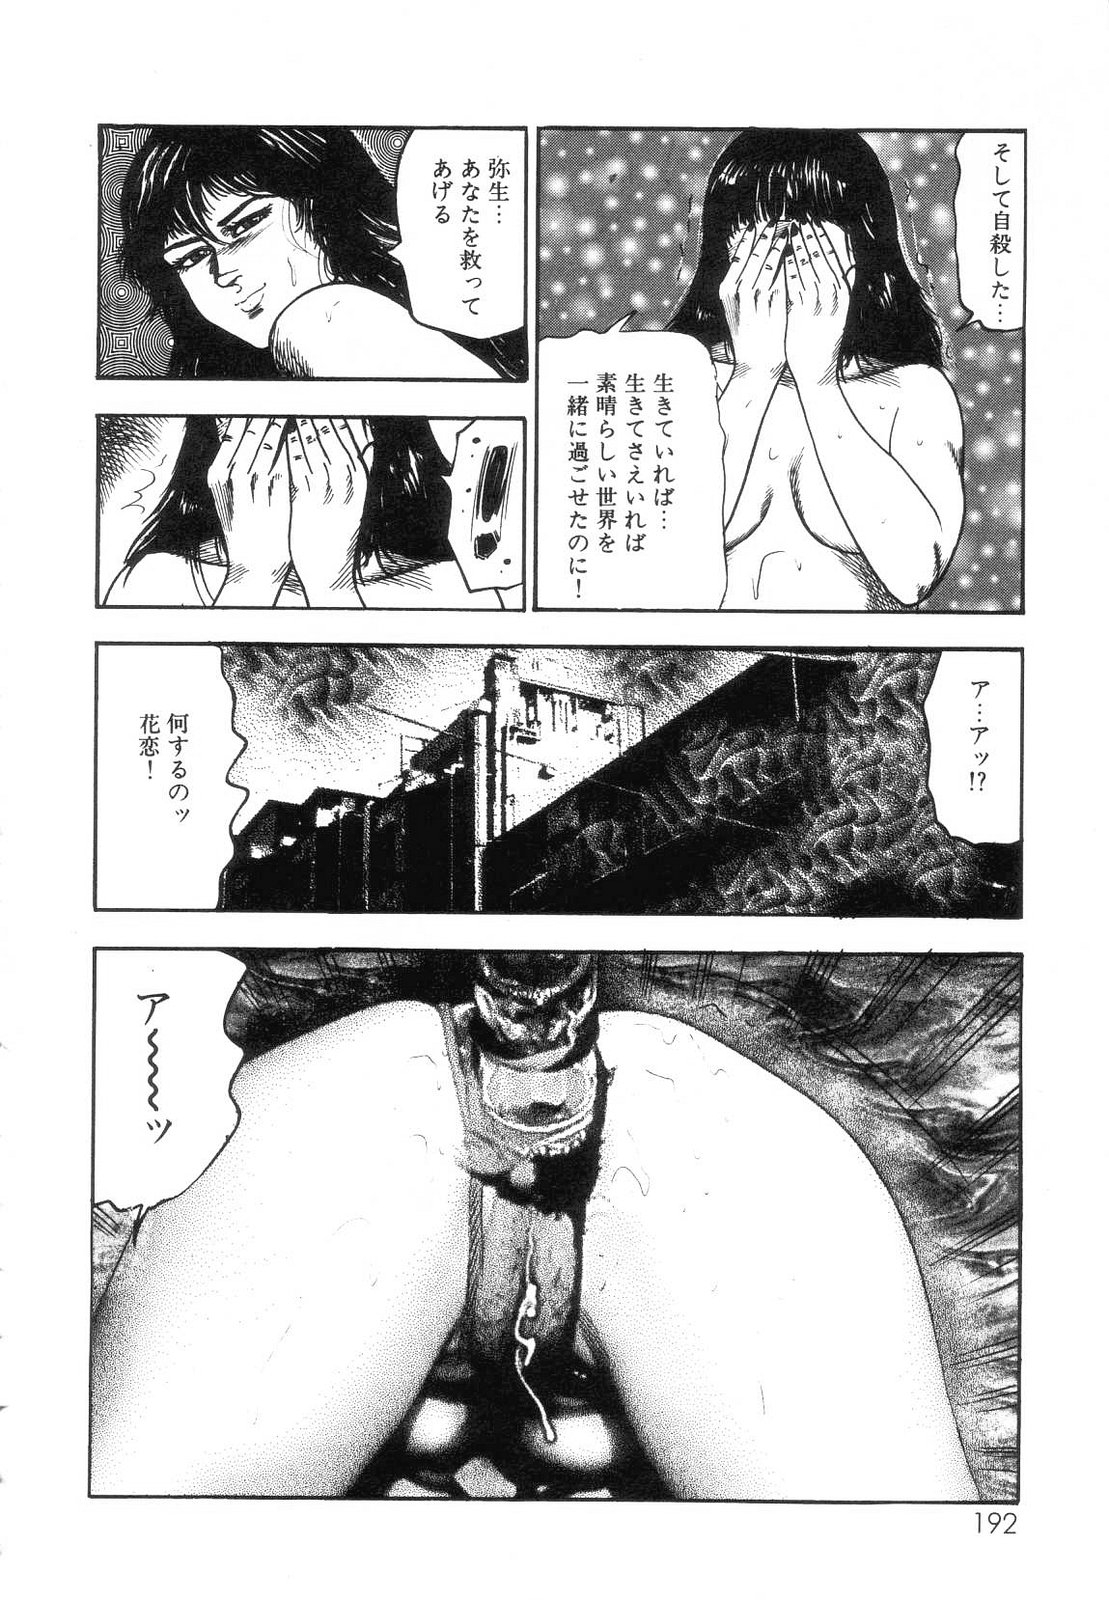 [Sanjou Tomomi] Shiro no Mokushiroku Vol. 7 - Shiiku Ningyou Erika no Shou 193